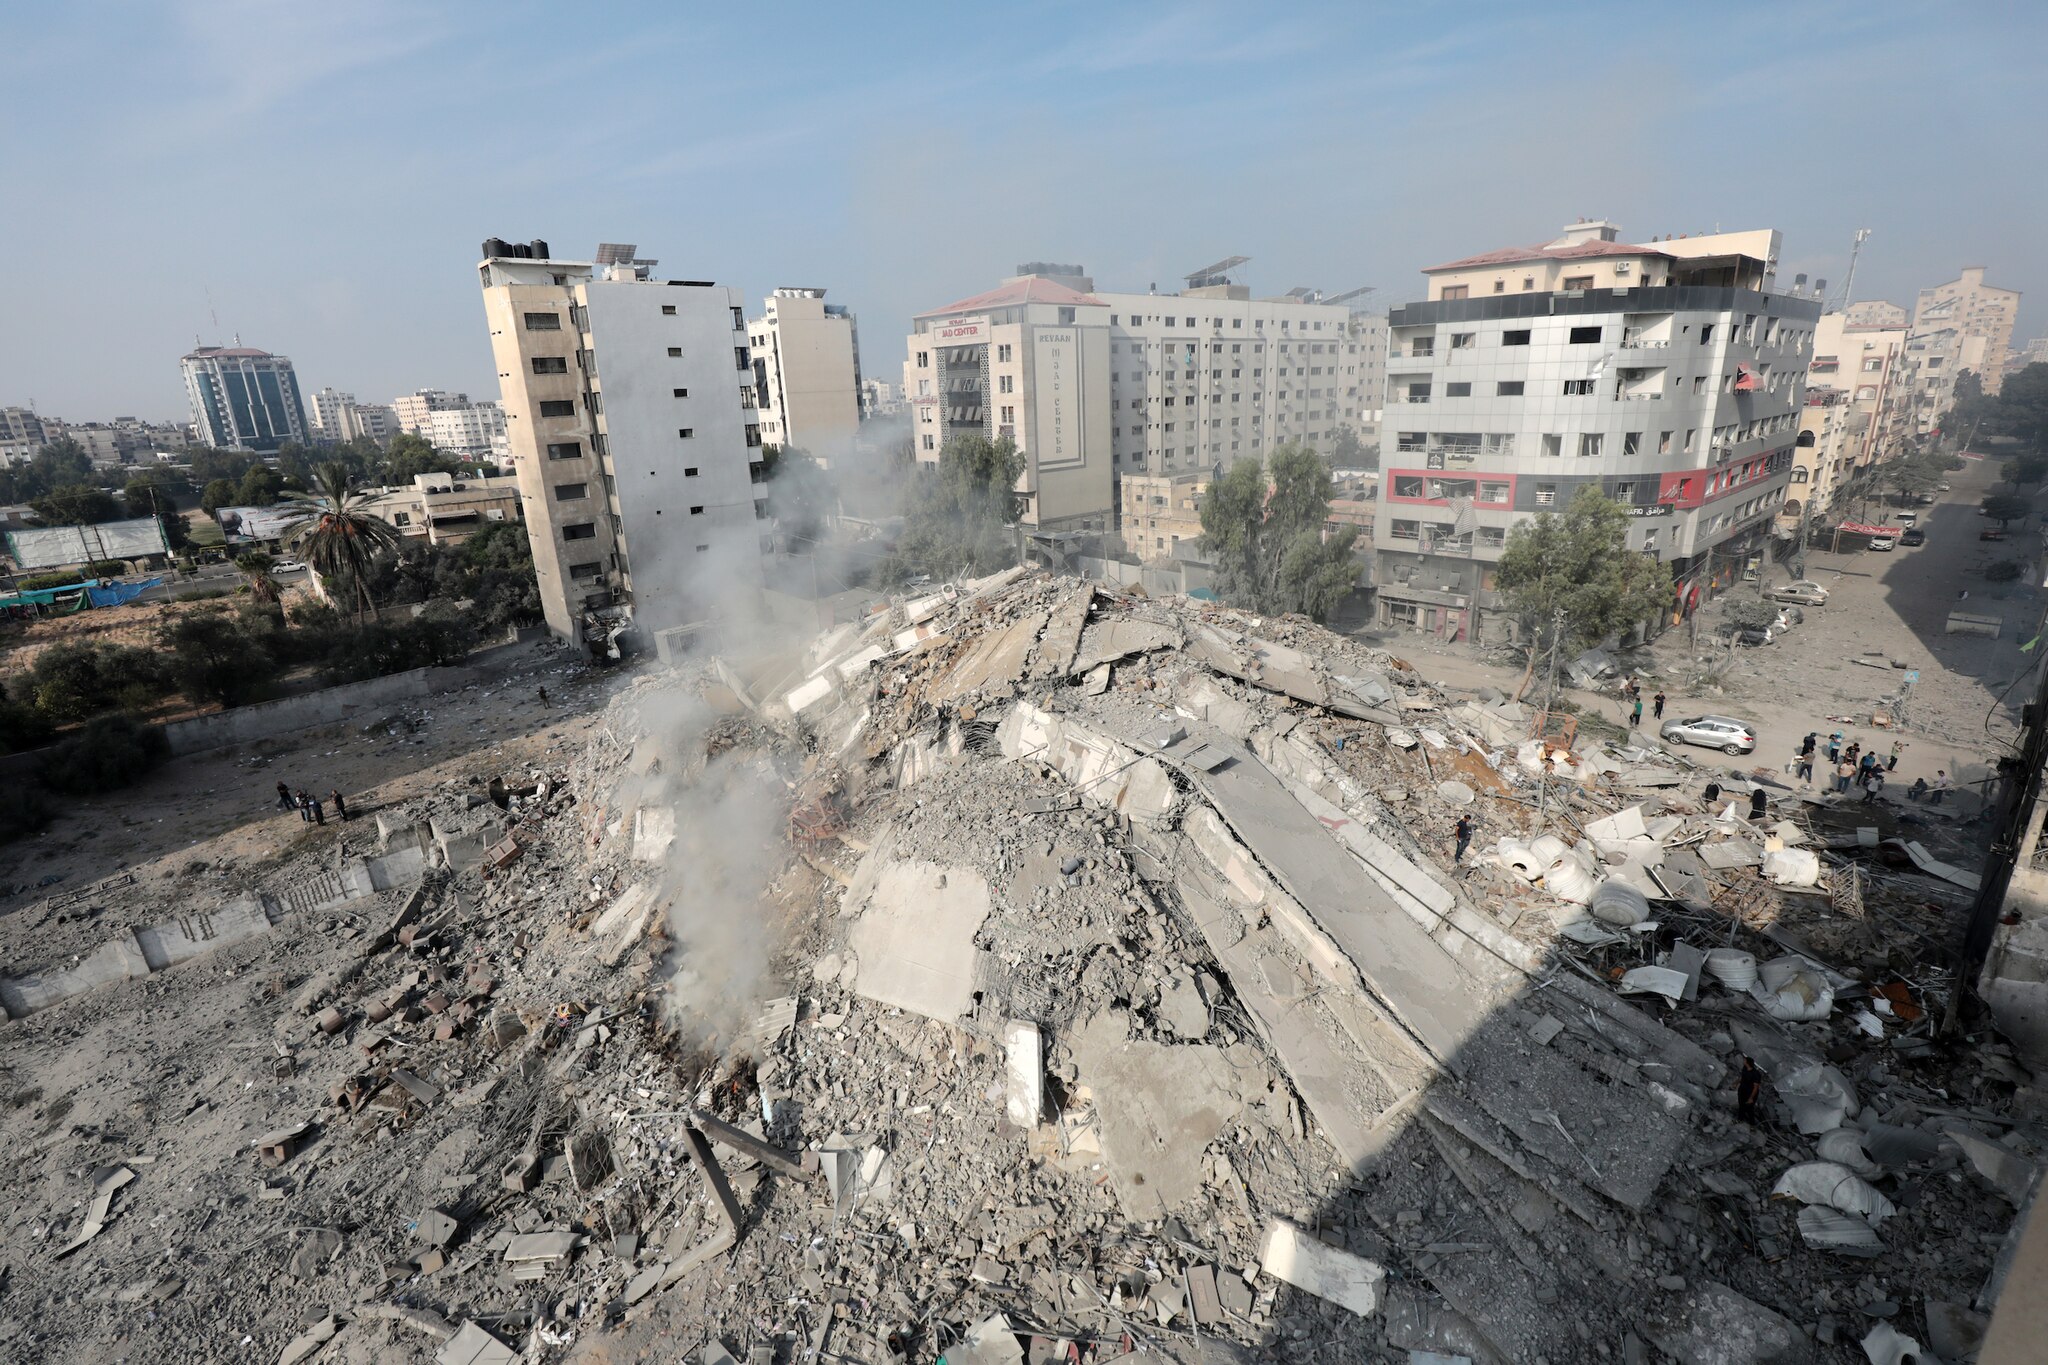 UN condemns resumption of conflict in Gaza after temporary ceasefire expires